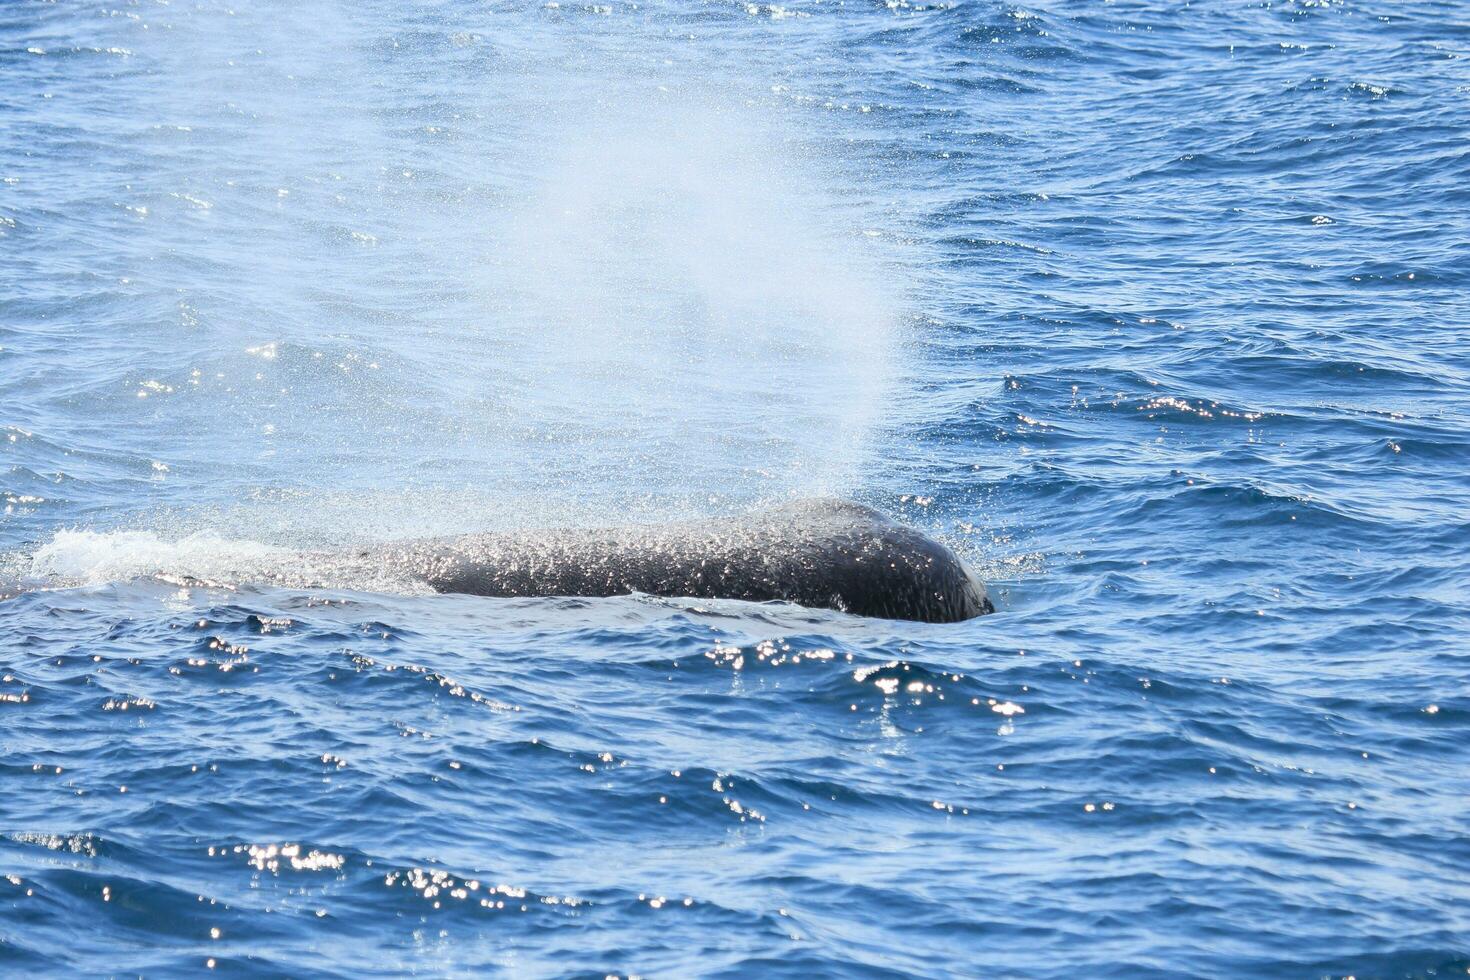 sperme baleine dans Nouveau zélande photo